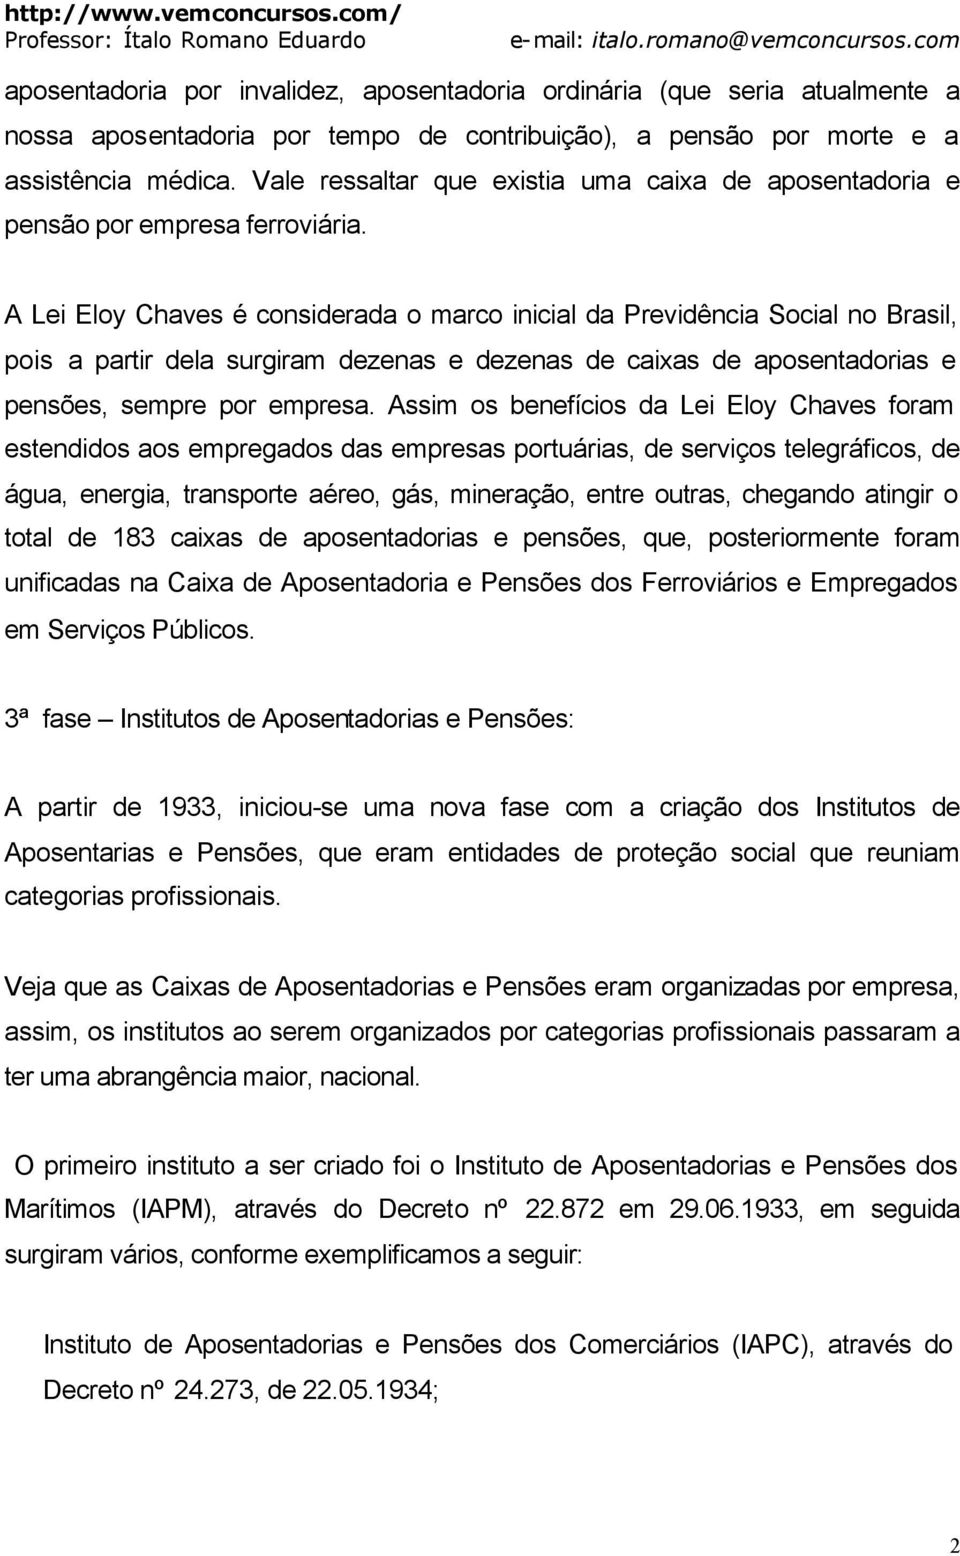 A Lei Eloy Chaves é considerada o marco inicial da Previdência Social no Brasil, pois a partir dela surgiram dezenas e dezenas de caixas de aposentadorias e pensões, sempre por empresa.